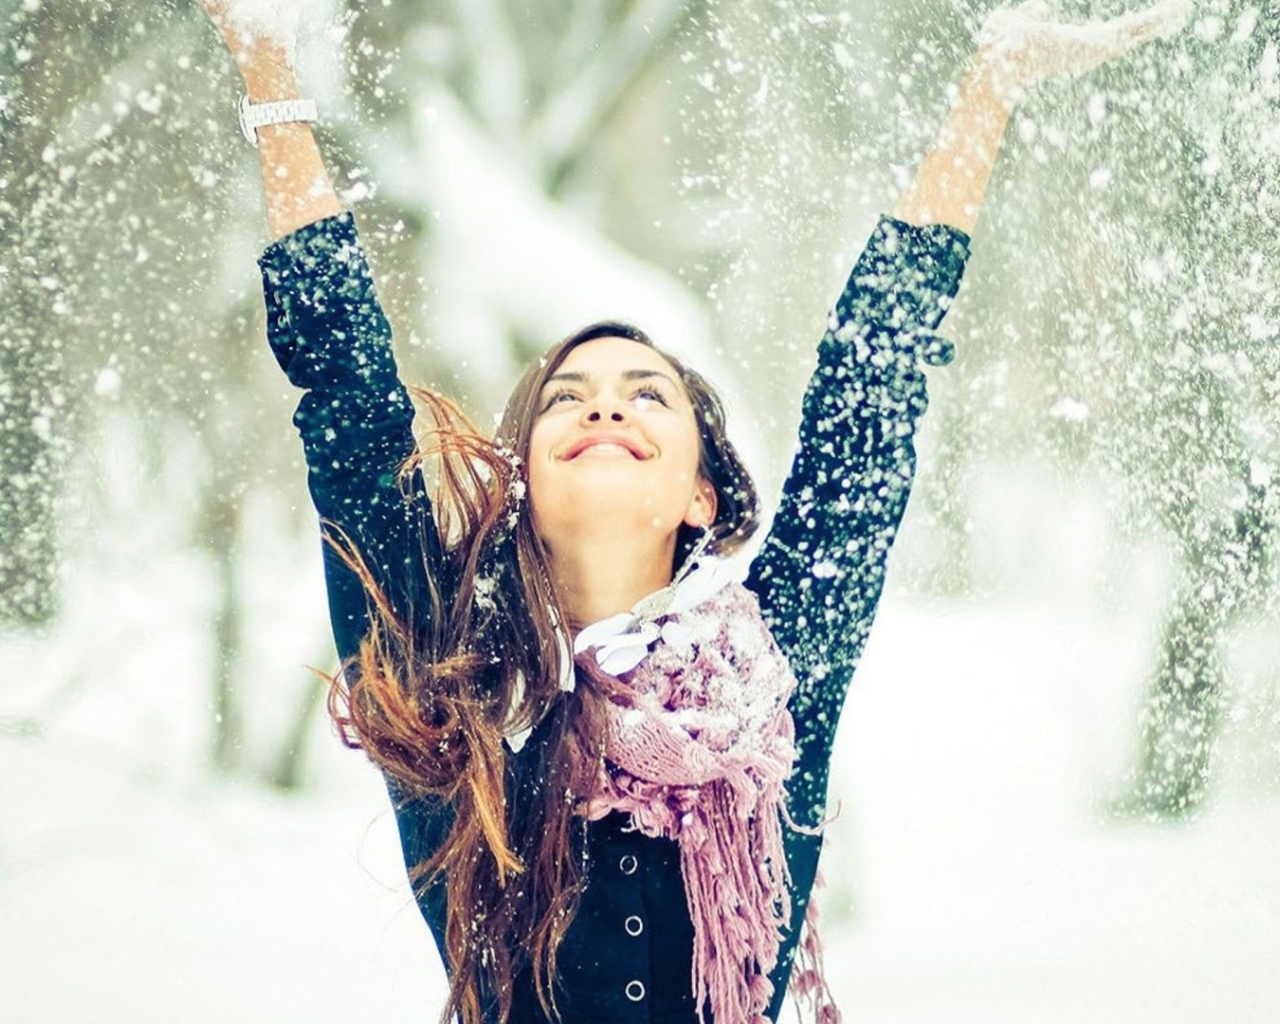 Beautiful girl enjoys snow